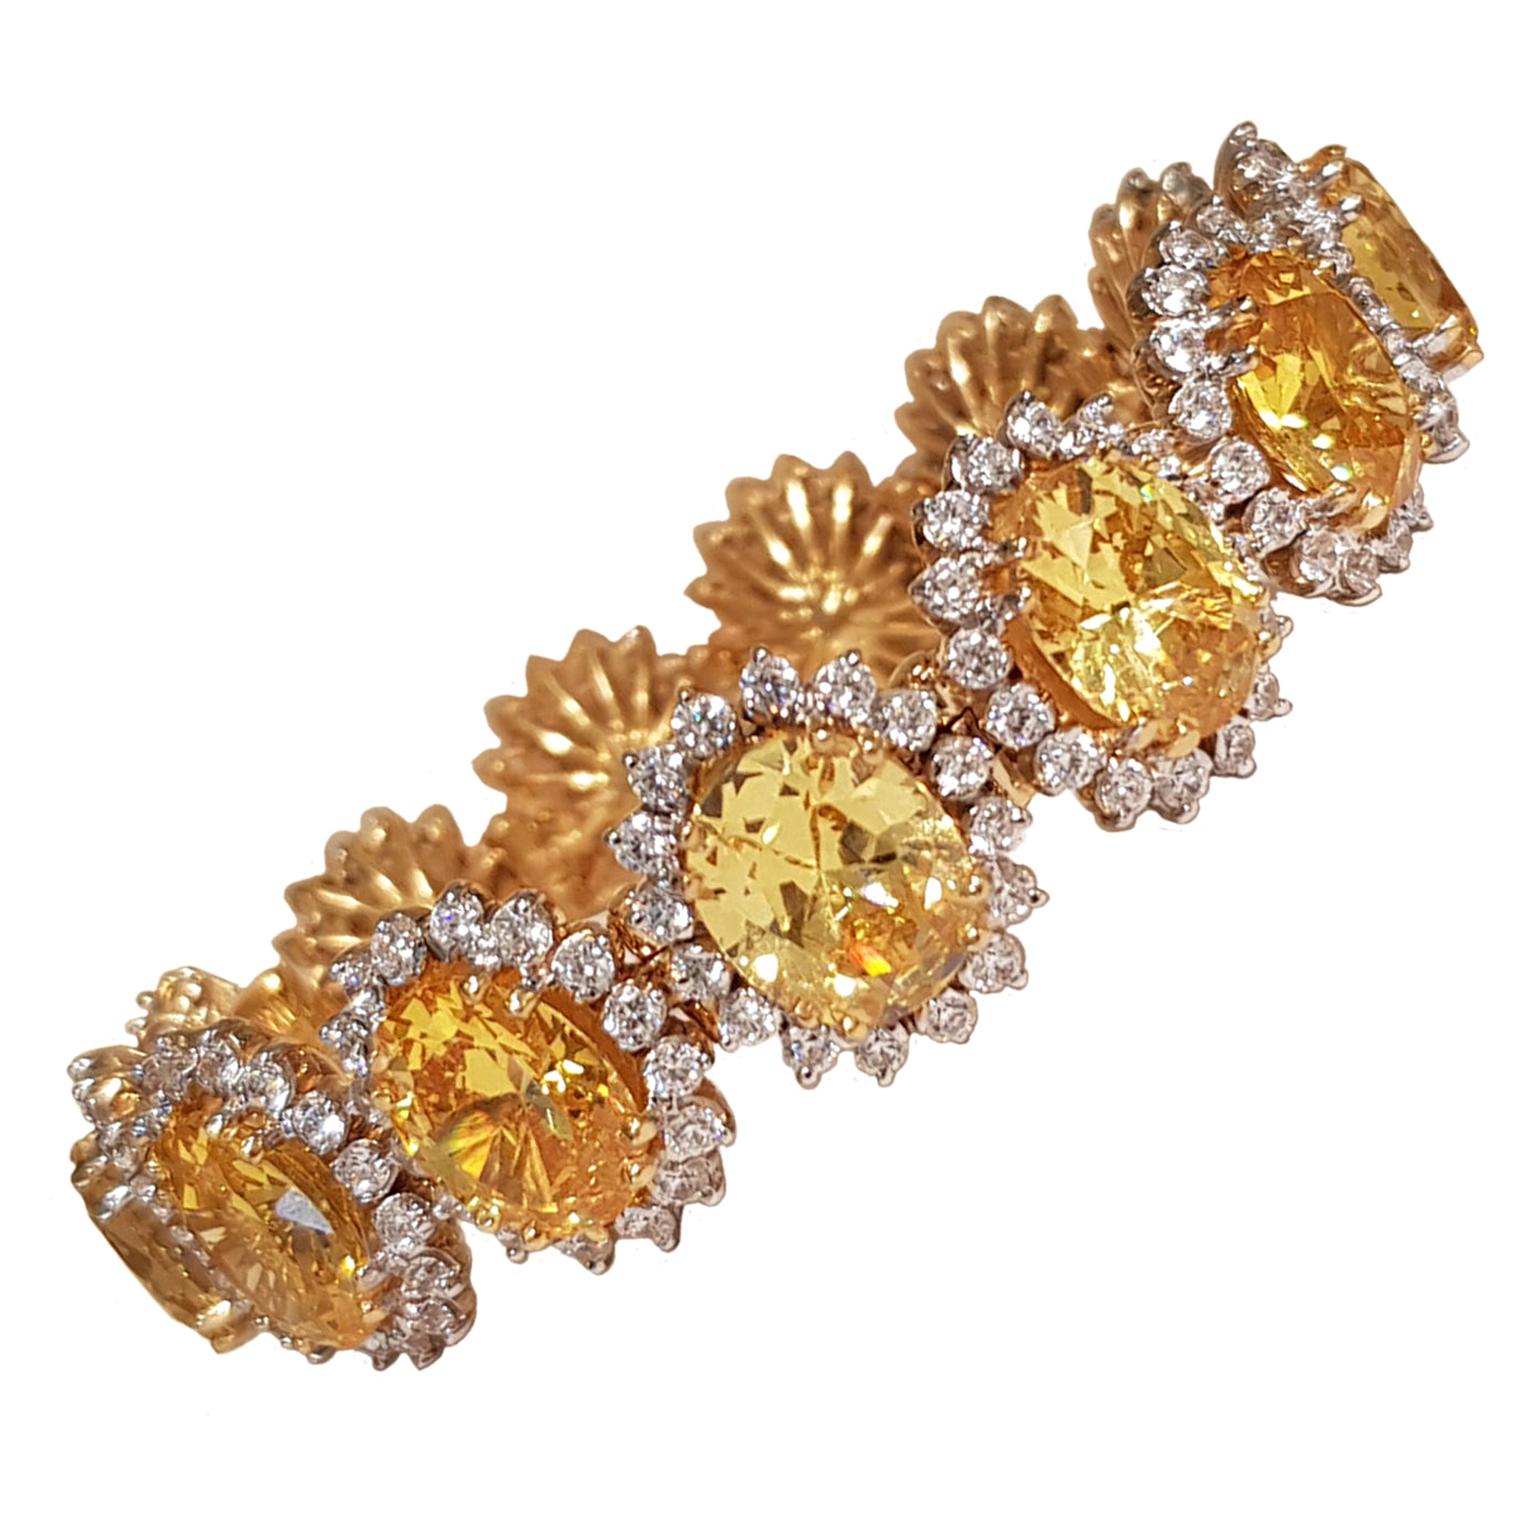 Paul Paul Amey 9k Gold mit gelbem und weißem Swarovski-Kristall-Armband